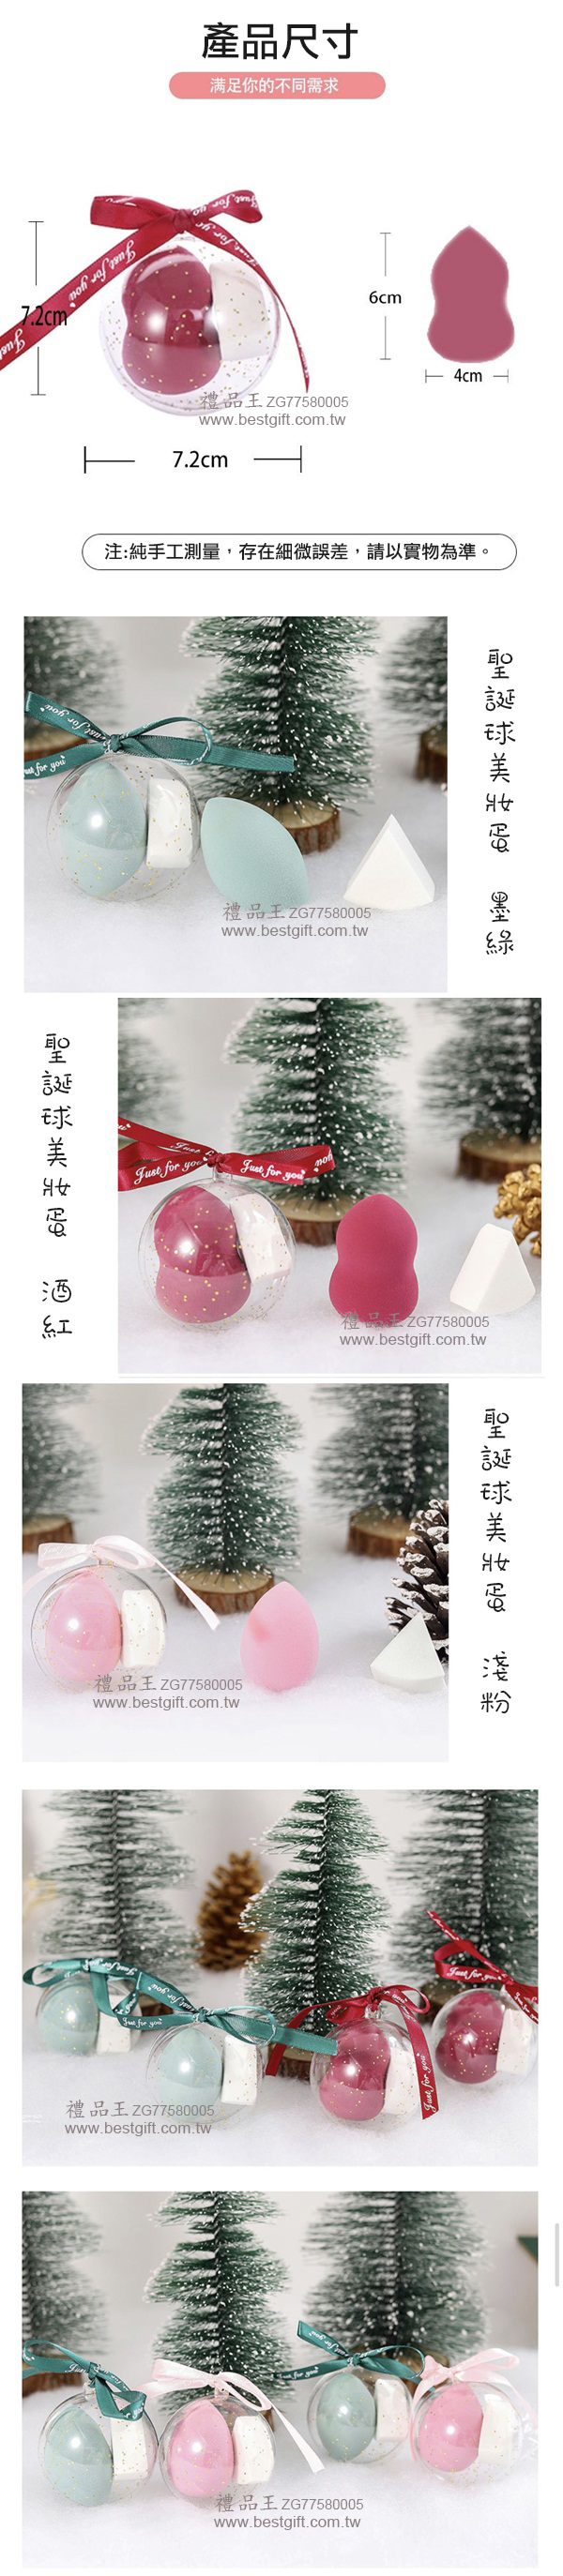 2入美妝蛋聖誕樹裝飾球  商品貨號: ZG77580005